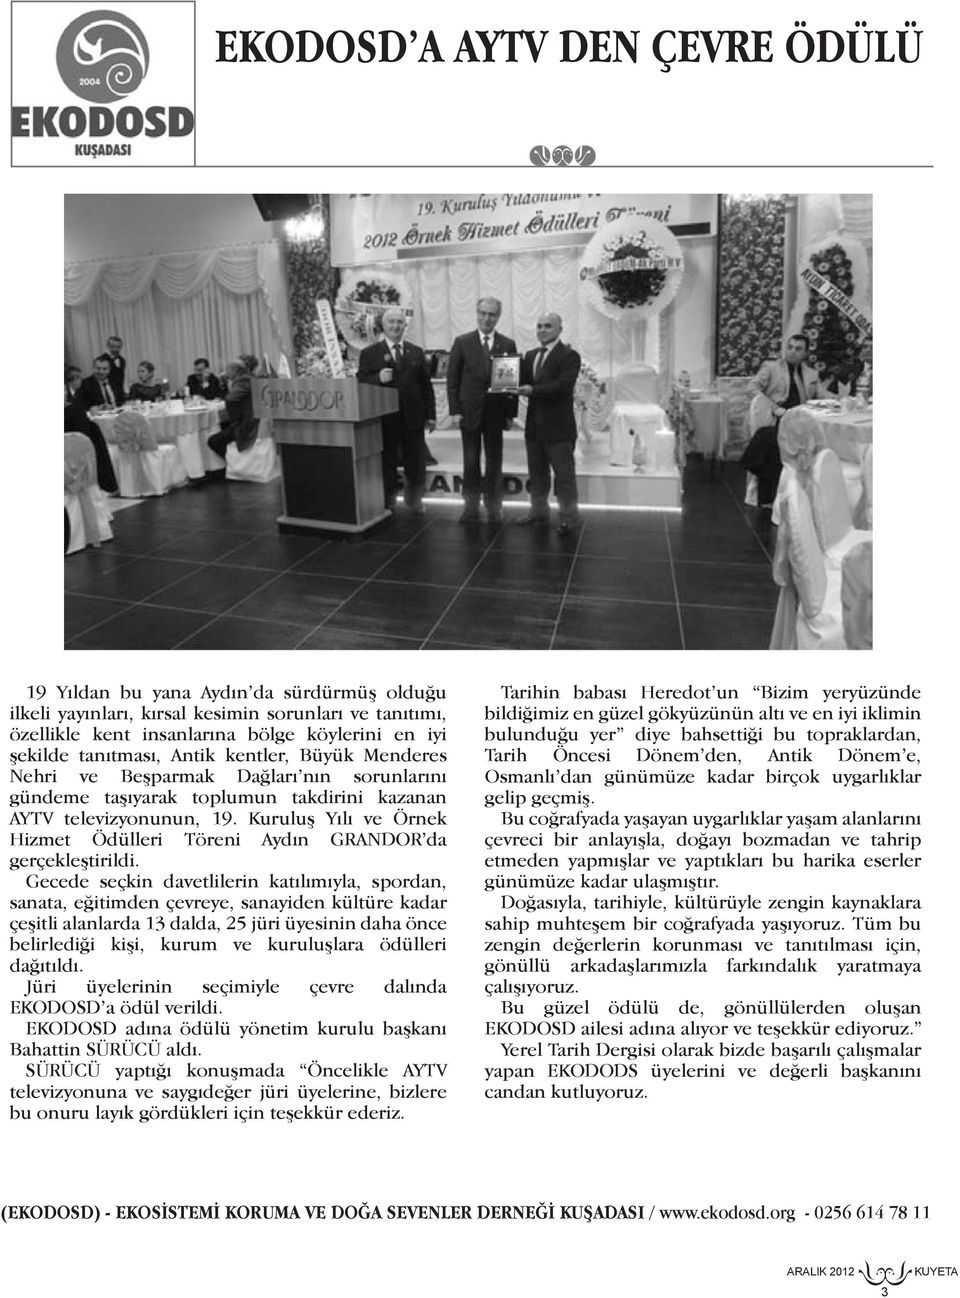 Kuruluş Yılı ve Örnek Hizmet Ödülleri Töreni Aydın GRANDOR da gerçekleştirildi.